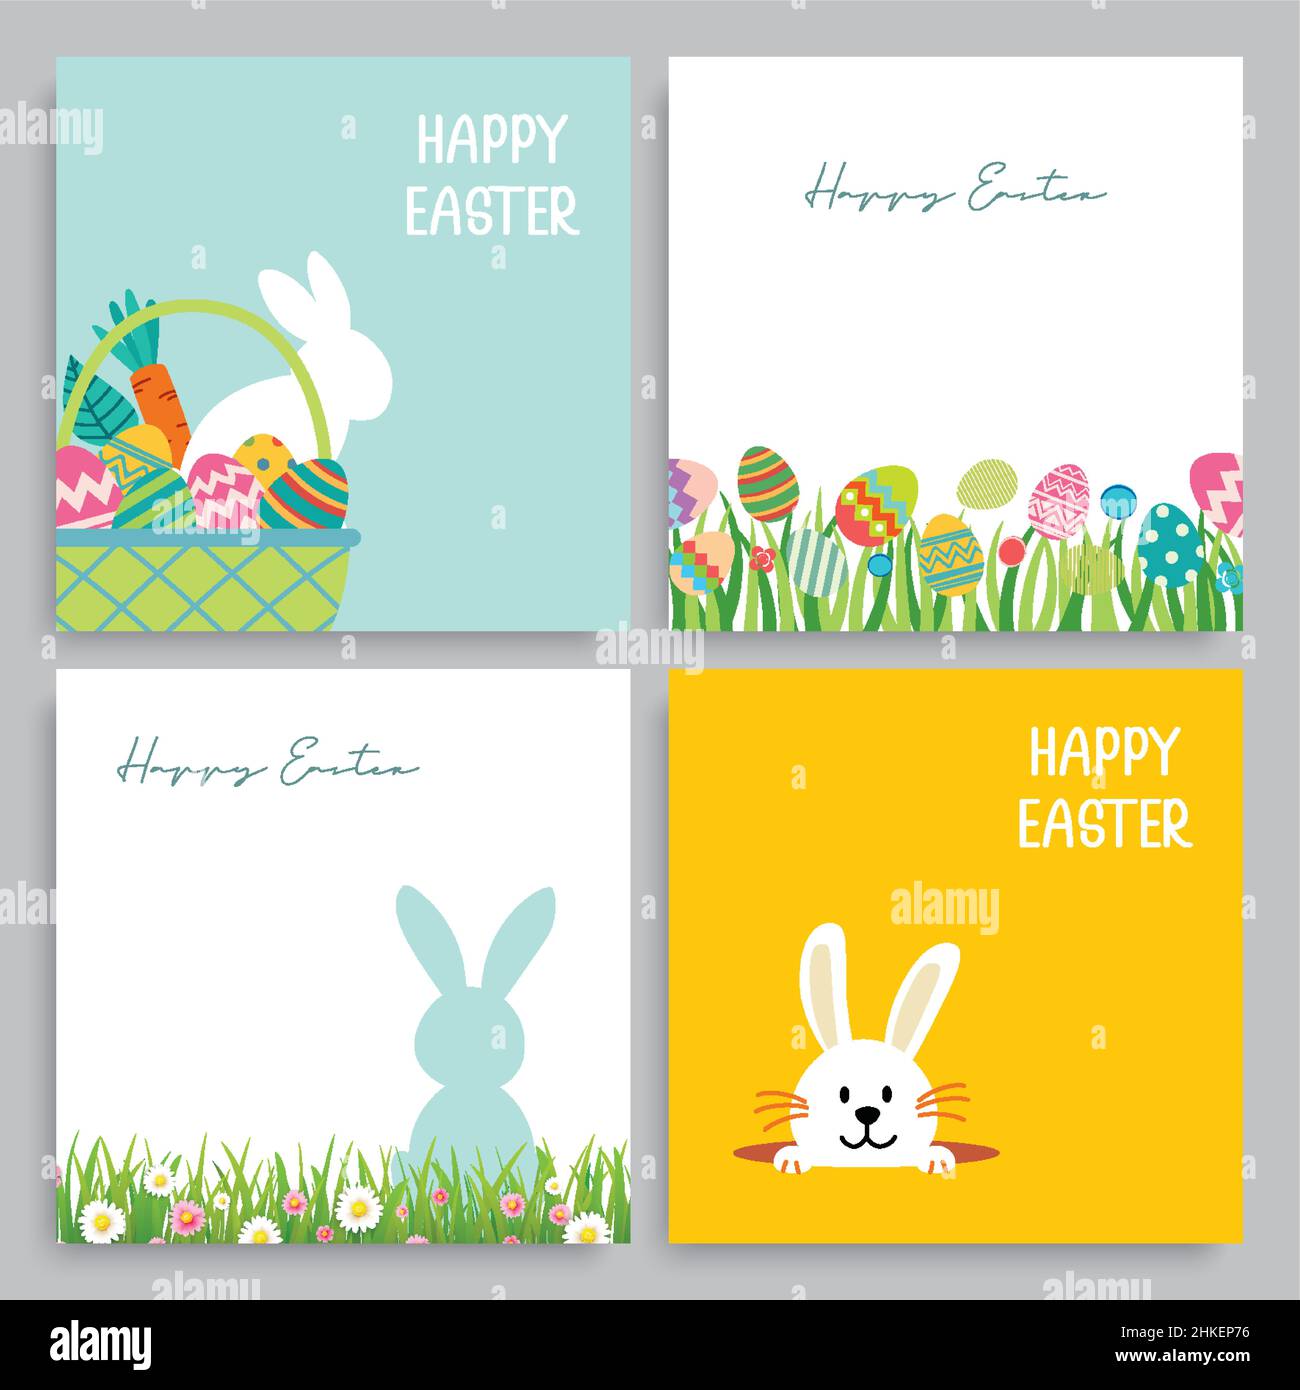 Happy Easter egg Grußkarte Hintergrund Vorlage. zur Einladung, ad, Wallpaper, Flyer, Poster, Broschüre verwendet werden können. Stock Vektor